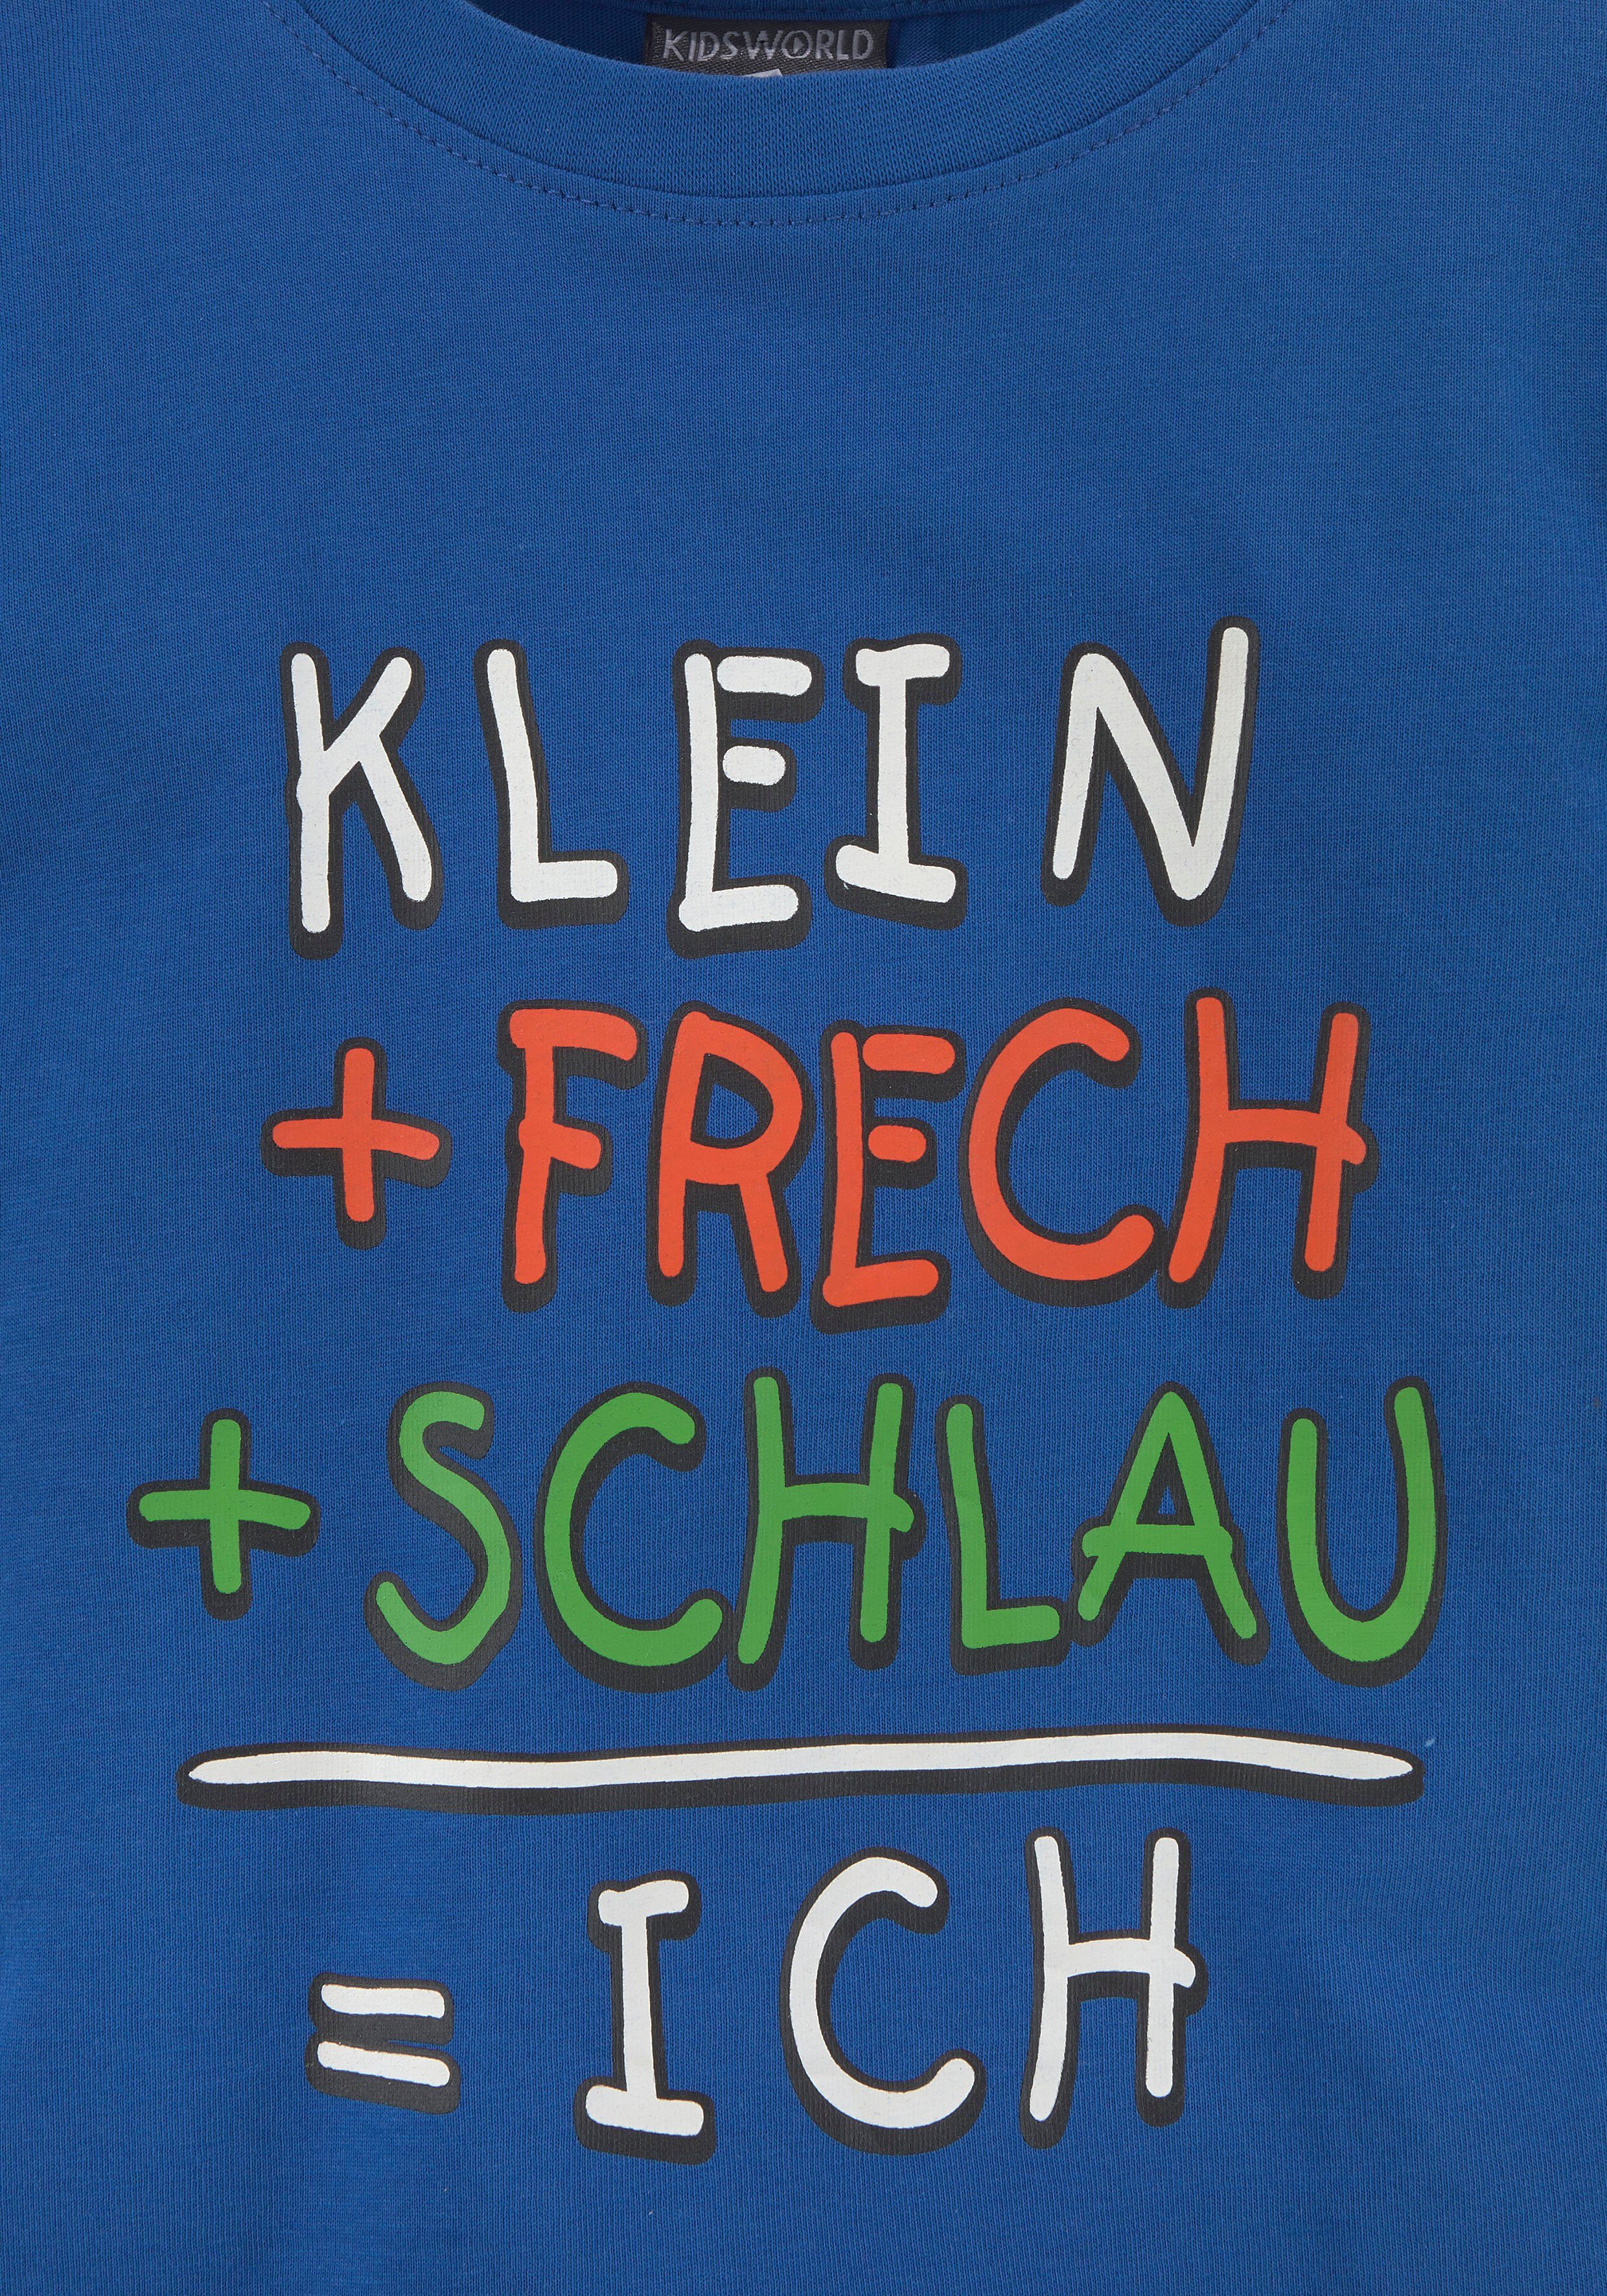 KIDSWORLD T-Shirt KLEIN+FRECH+SCHLAU